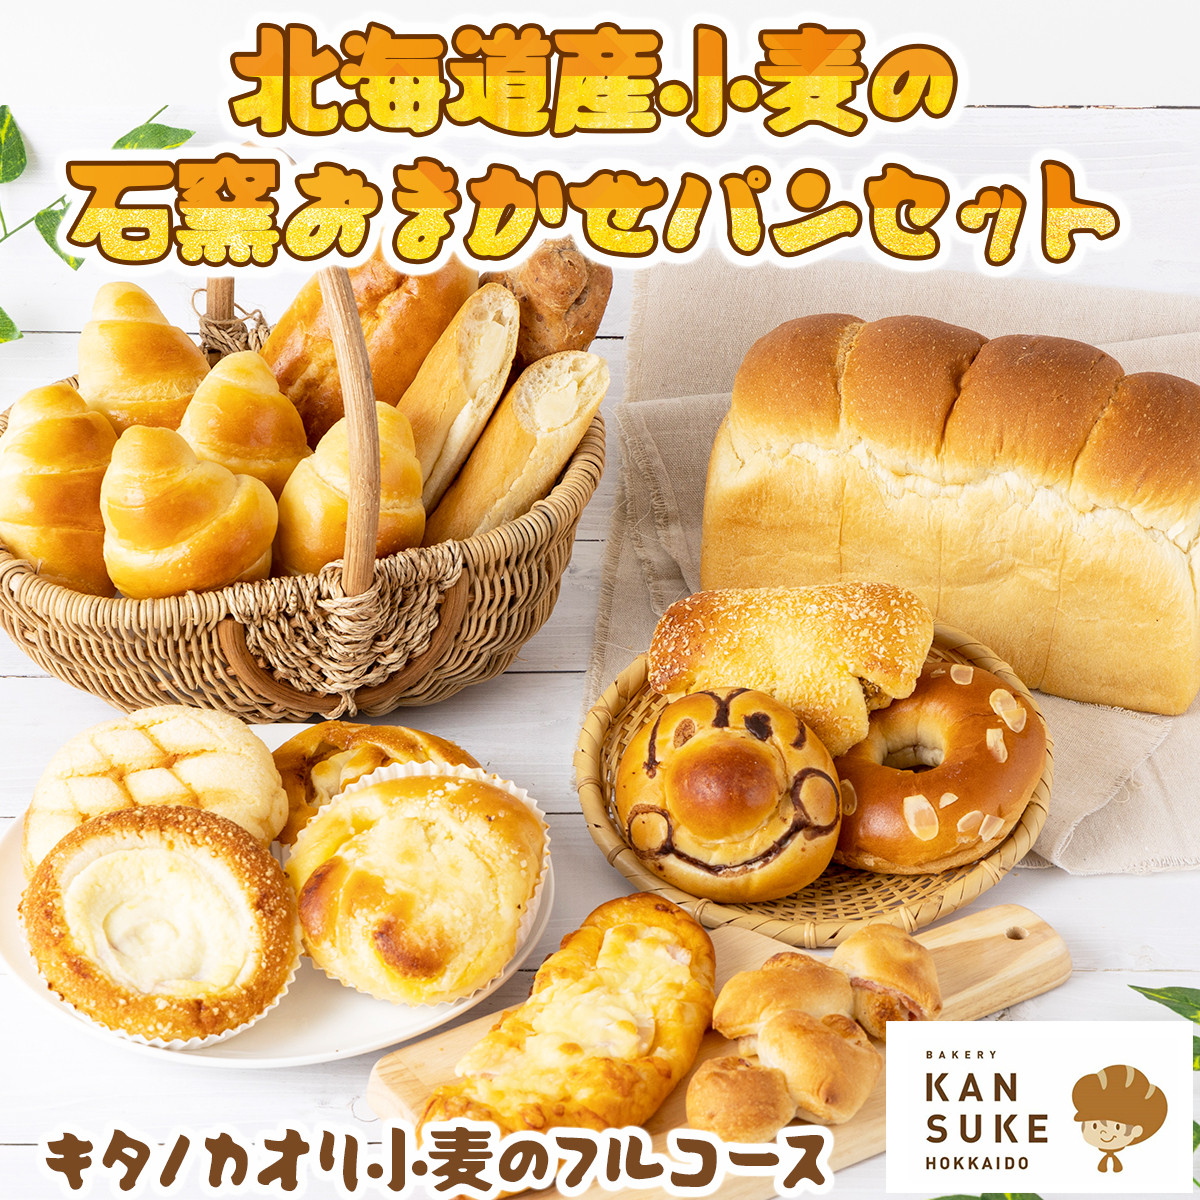 『こだわりの北海道産小麦のパンセット』石窯で焼き上げたお任せパンセット